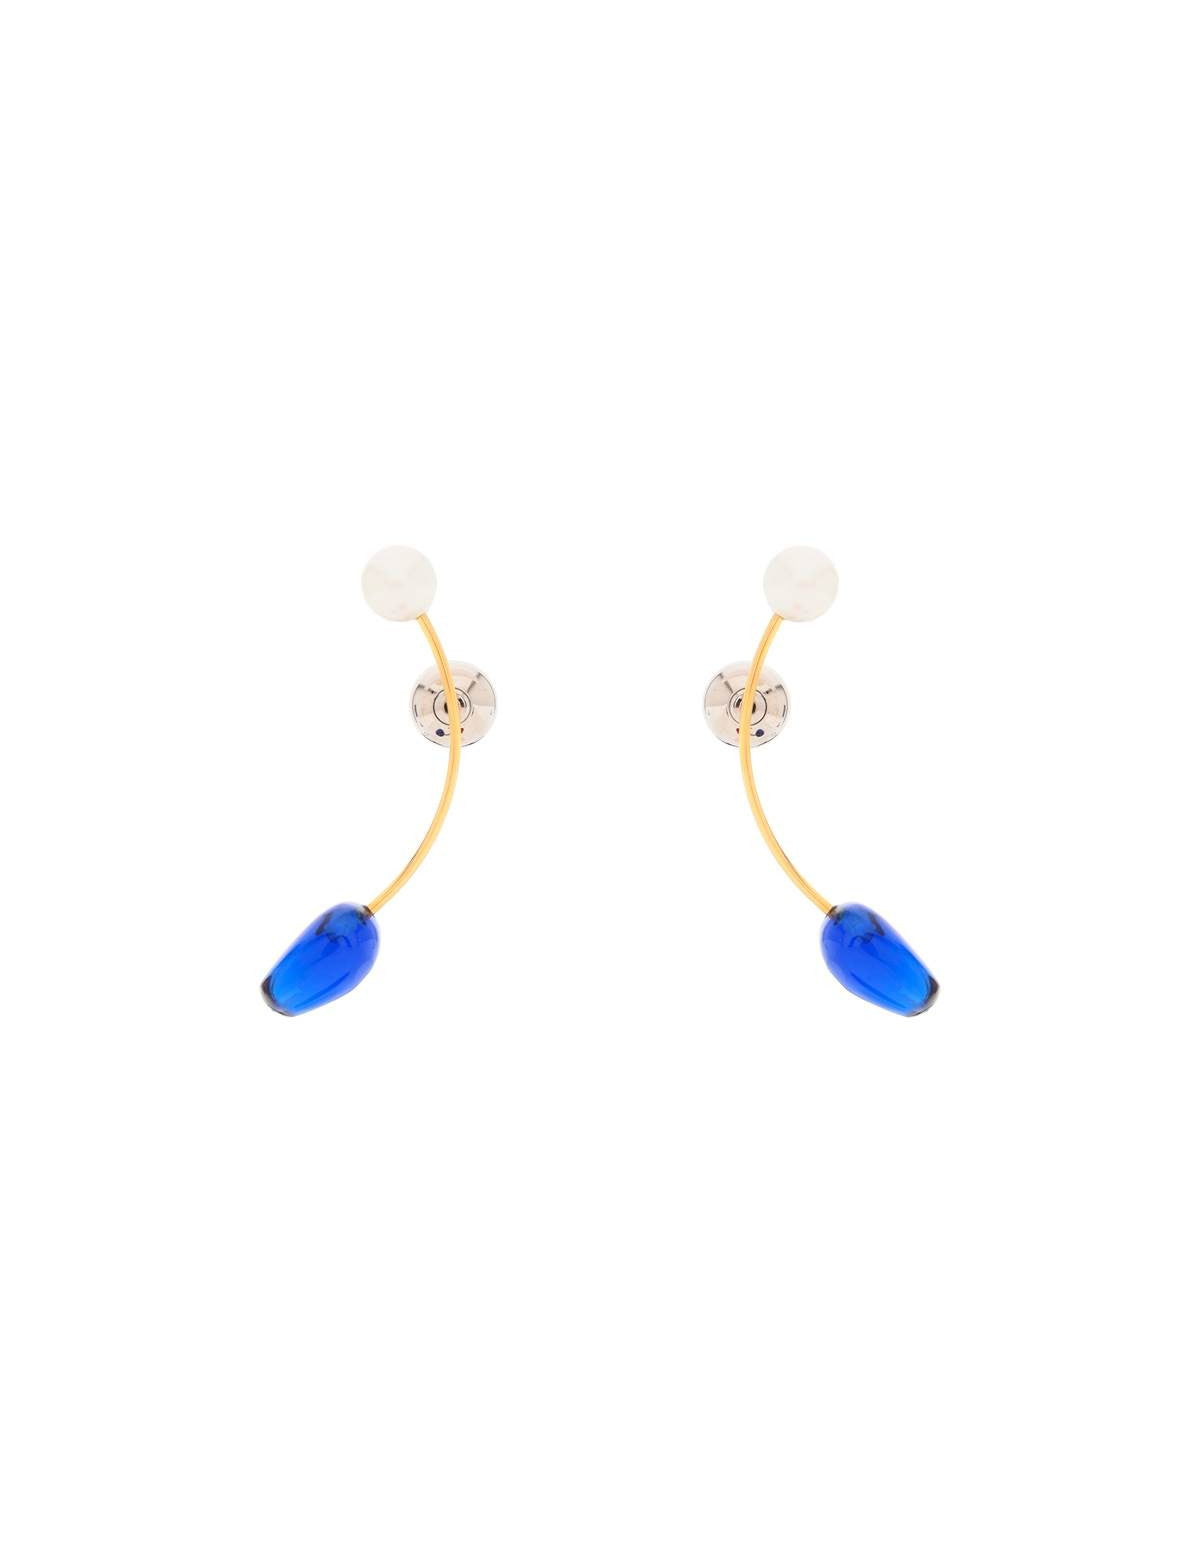 dries-van-noten-earrings-with-pearls-and-stones.jpg